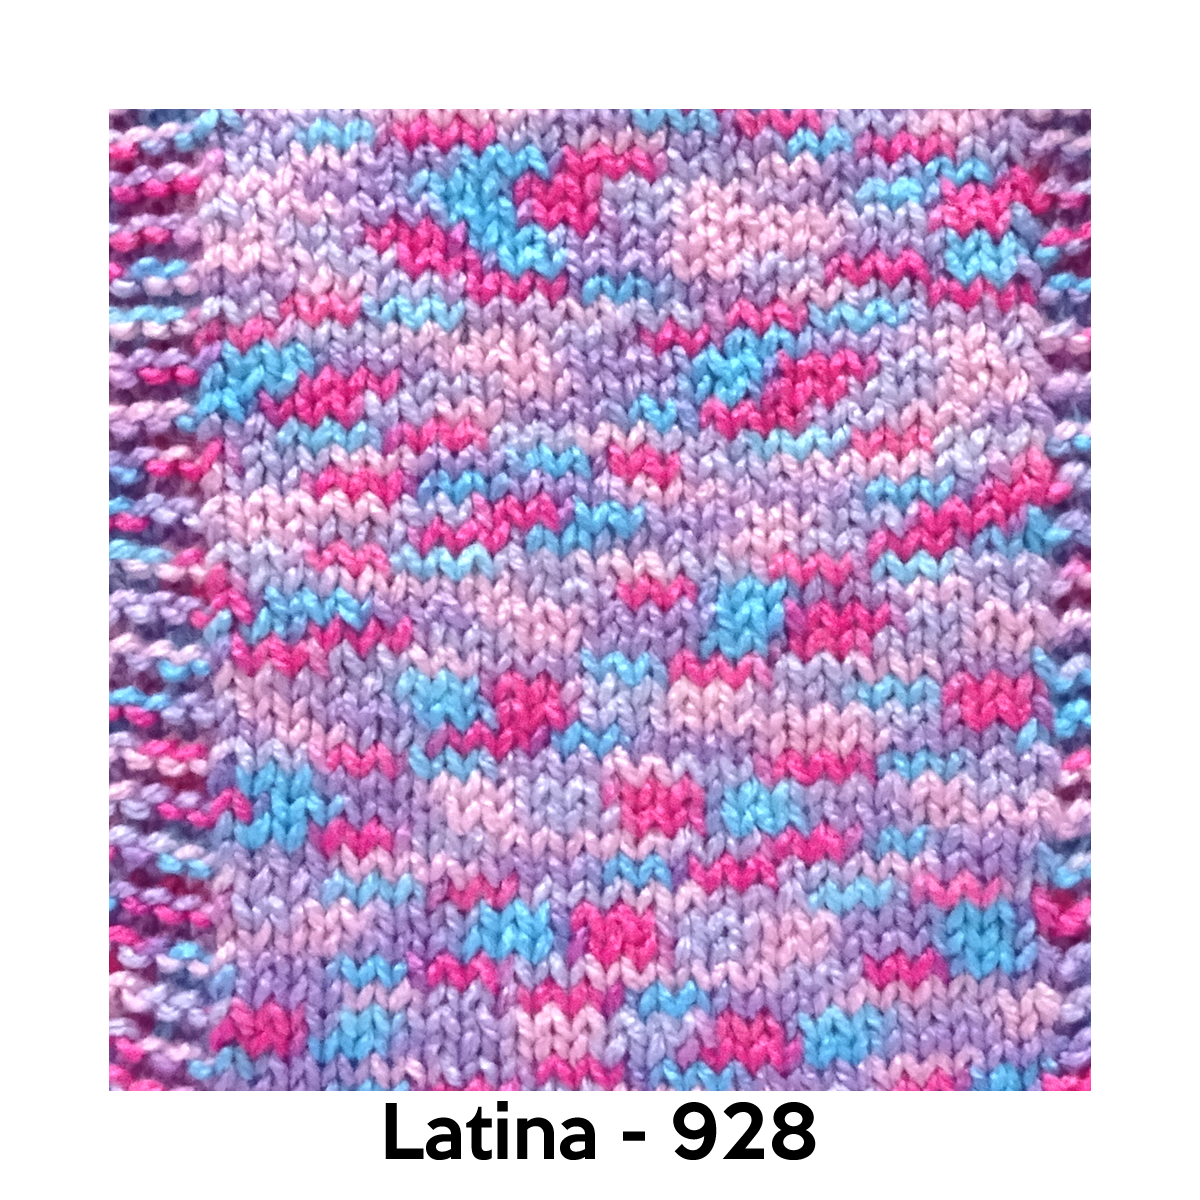 Latina - 928